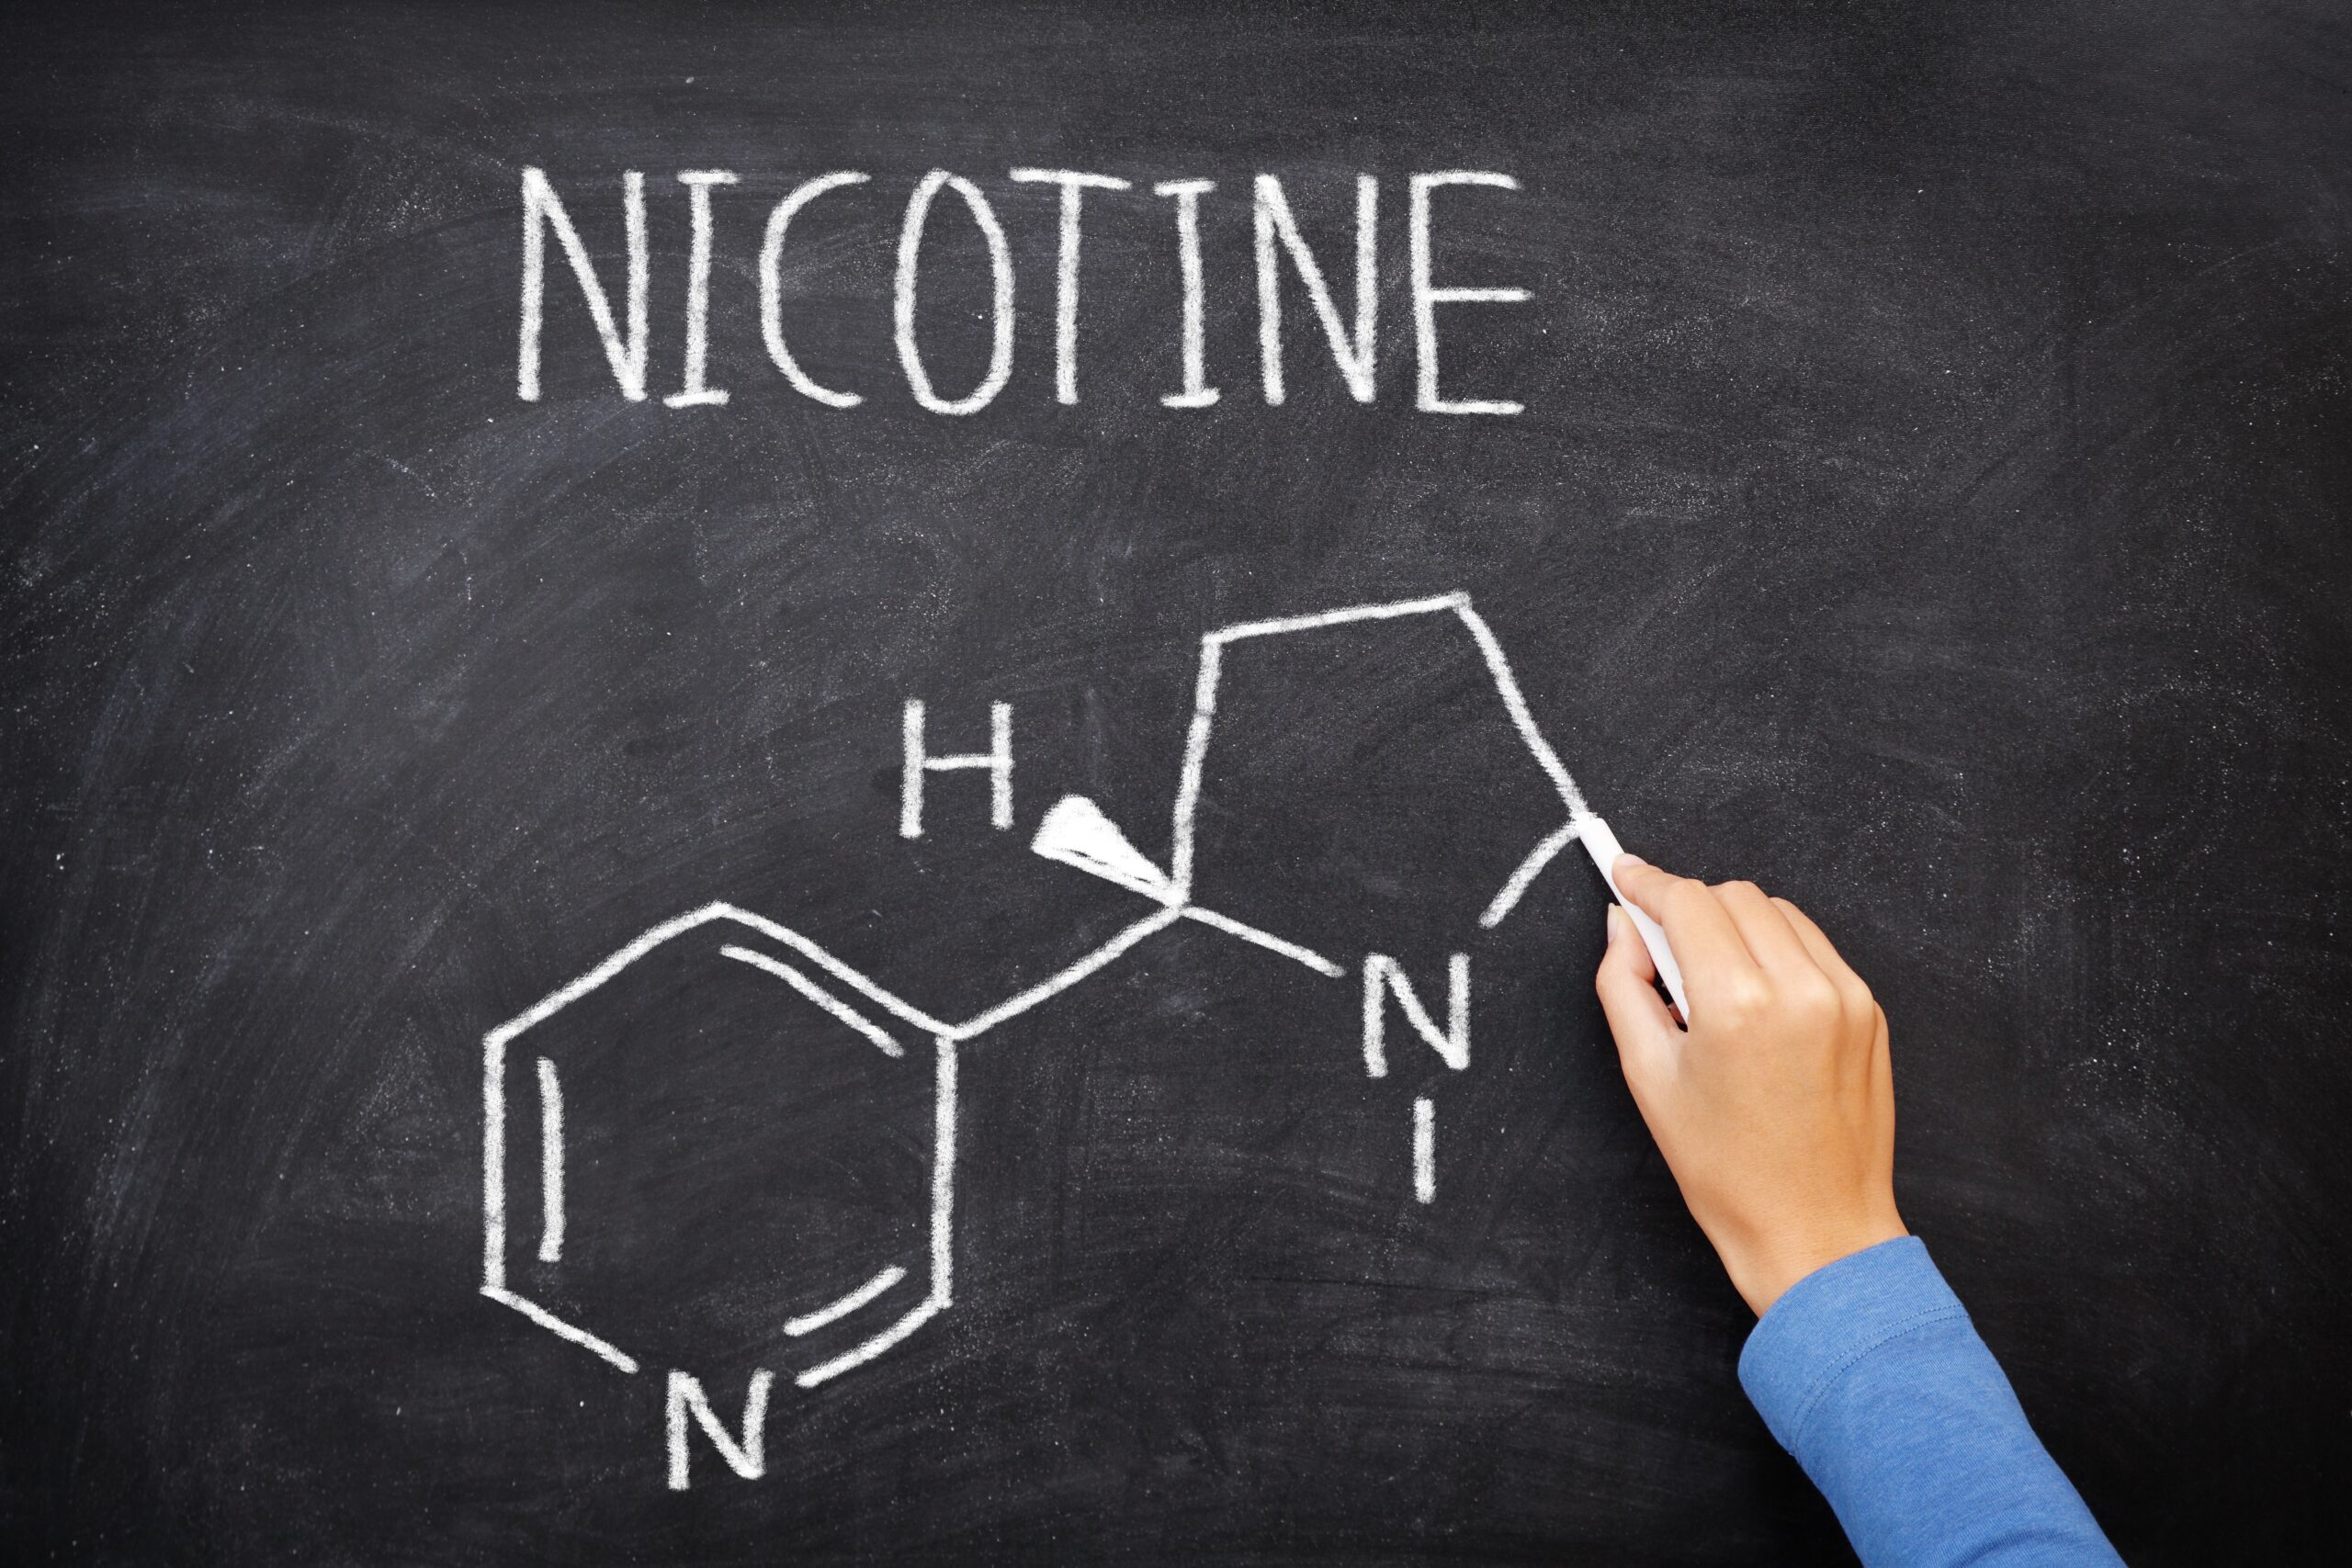 Krijtbord met structuurformule nicotine